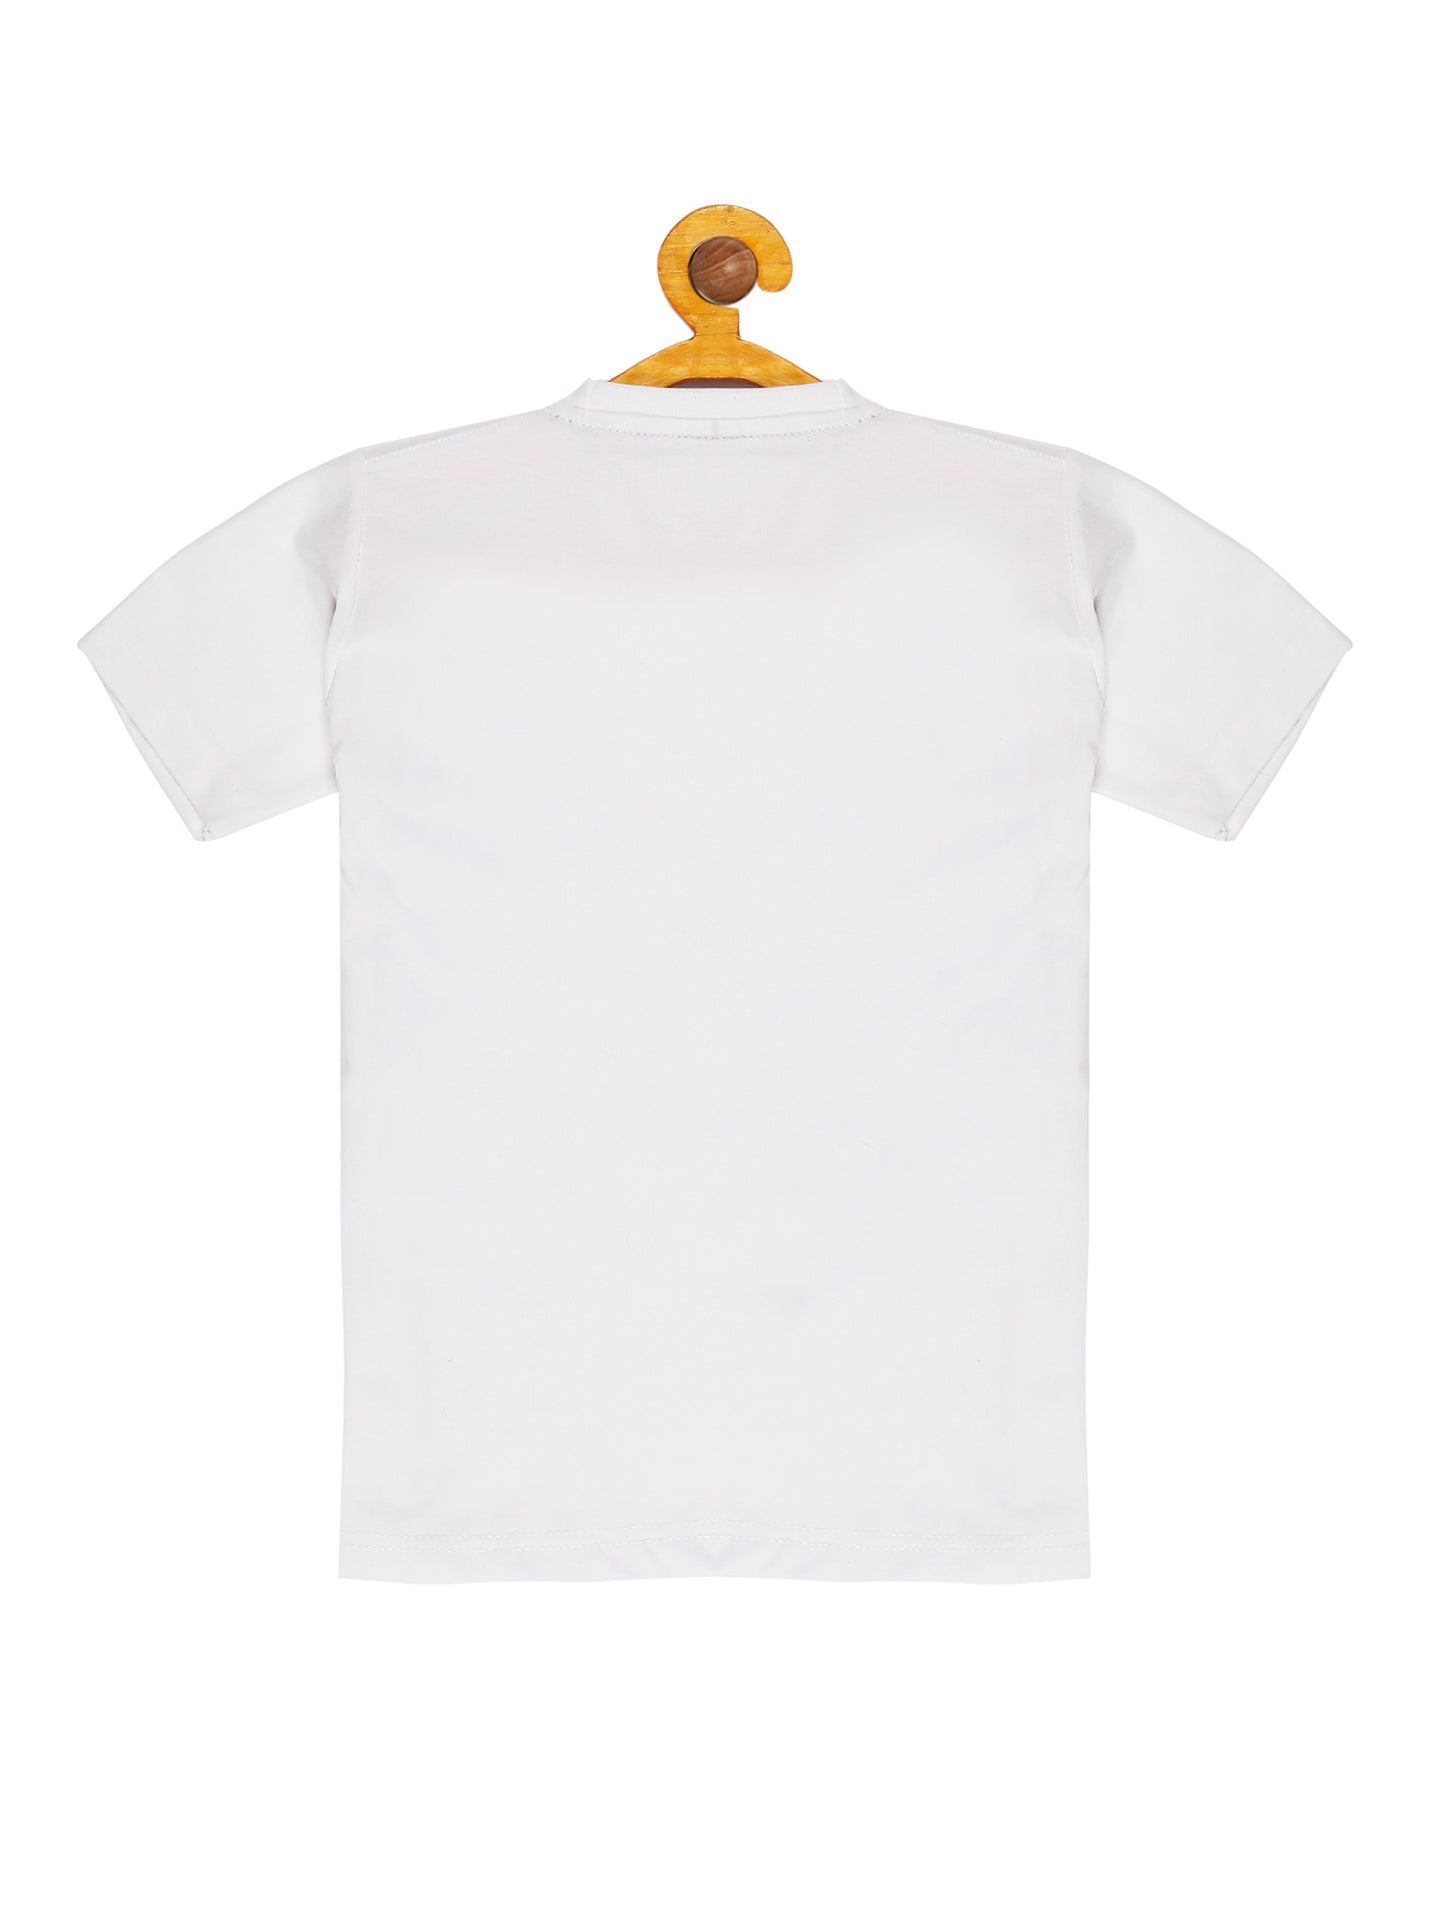 Kids Printed round neck White Fish t-shirt